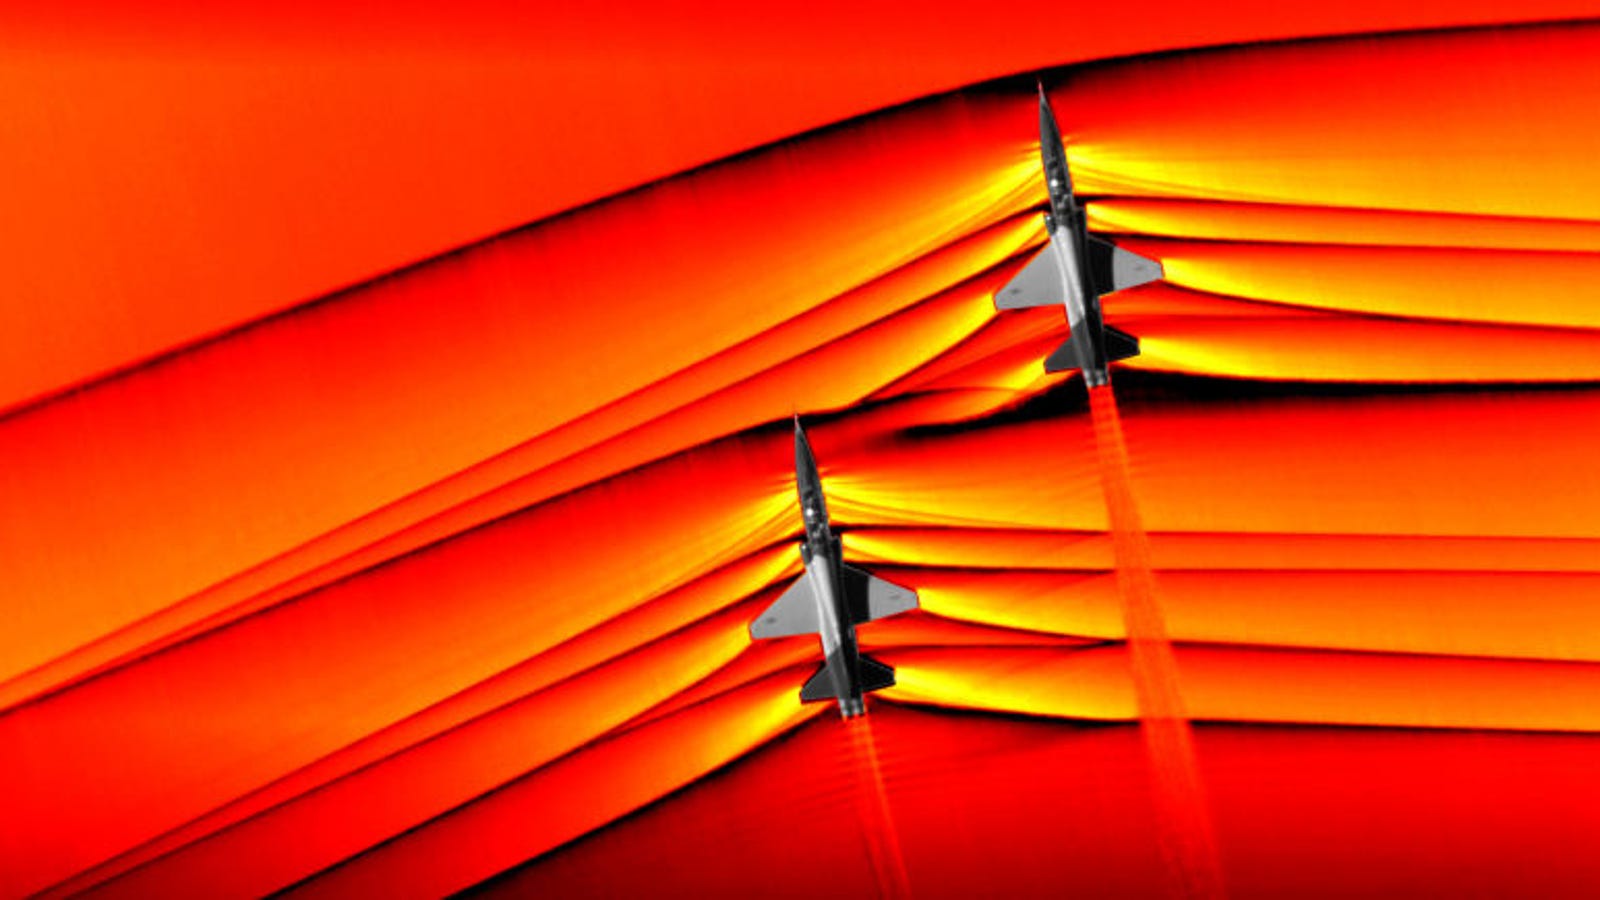 La NASA captura las primeras imágenes de ondas de choque interactivas producidas por dos aviones supersónicos en vuelo